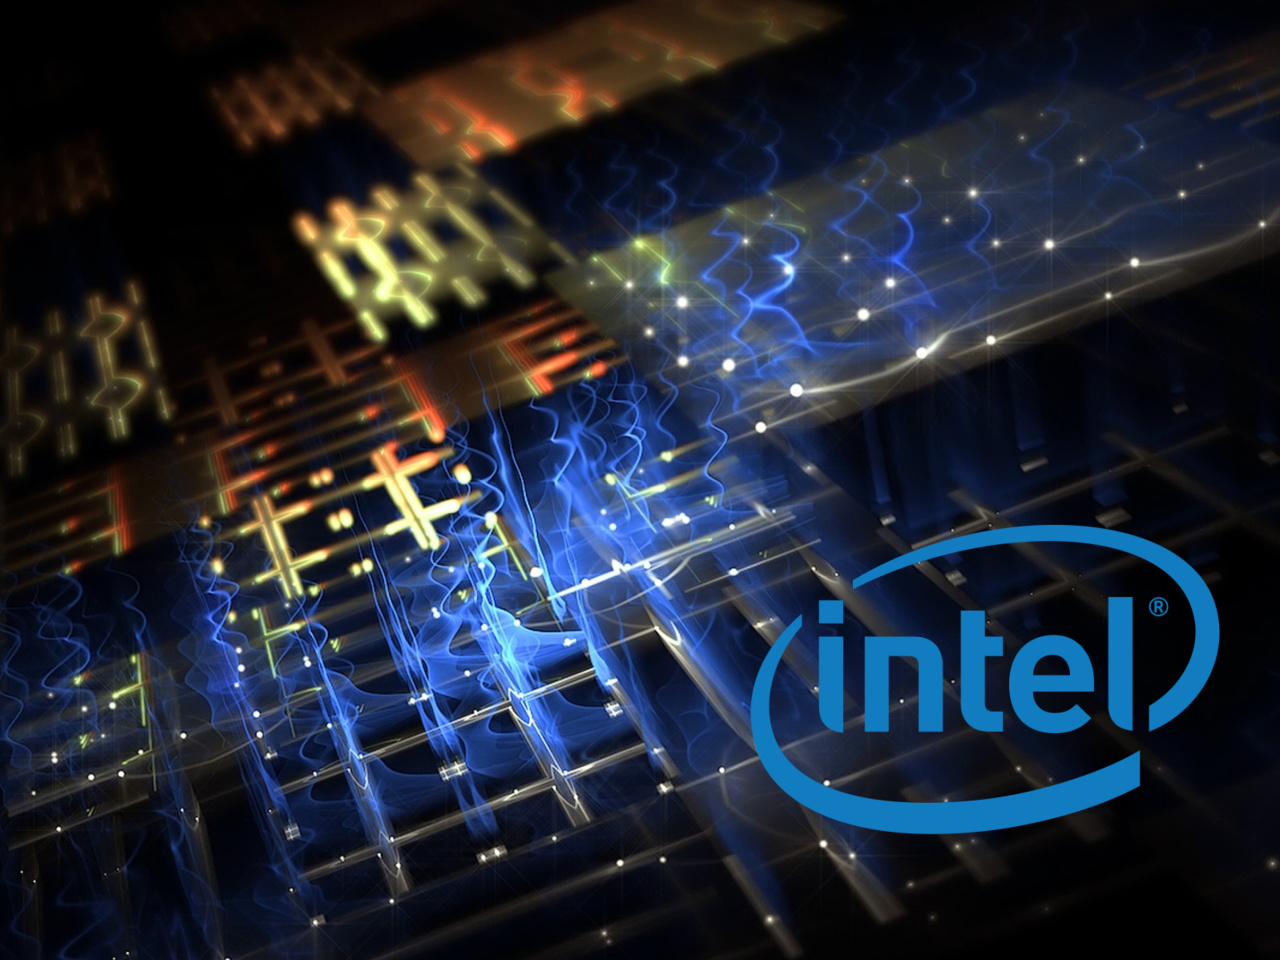 Das Intel i7 Processor Wallpaper 1280x960